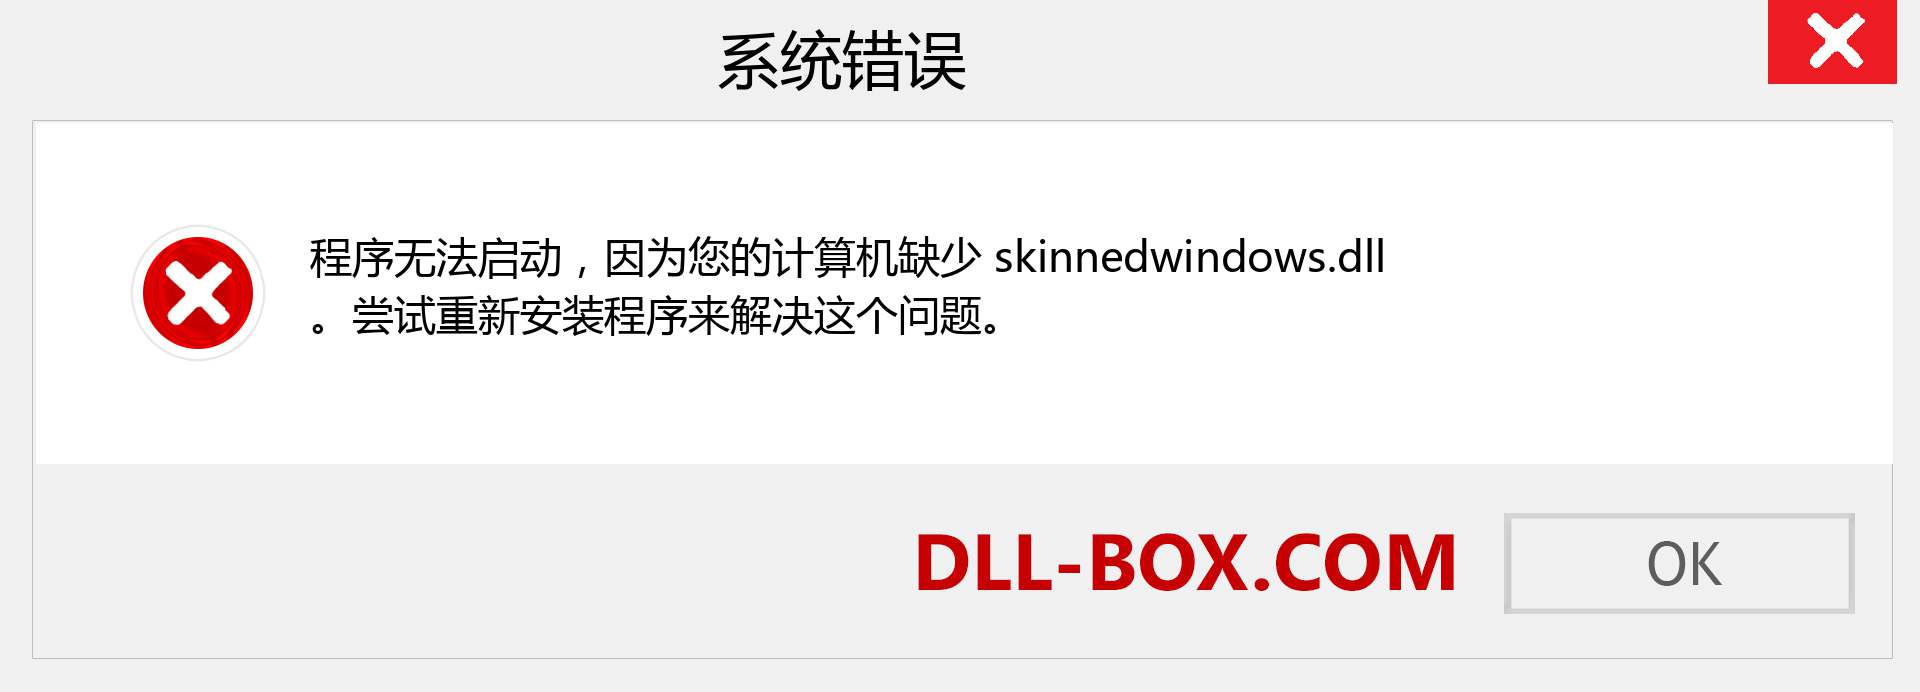 skinnedwindows.dll 文件丢失？。 适用于 Windows 7、8、10 的下载 - 修复 Windows、照片、图像上的 skinnedwindows dll 丢失错误